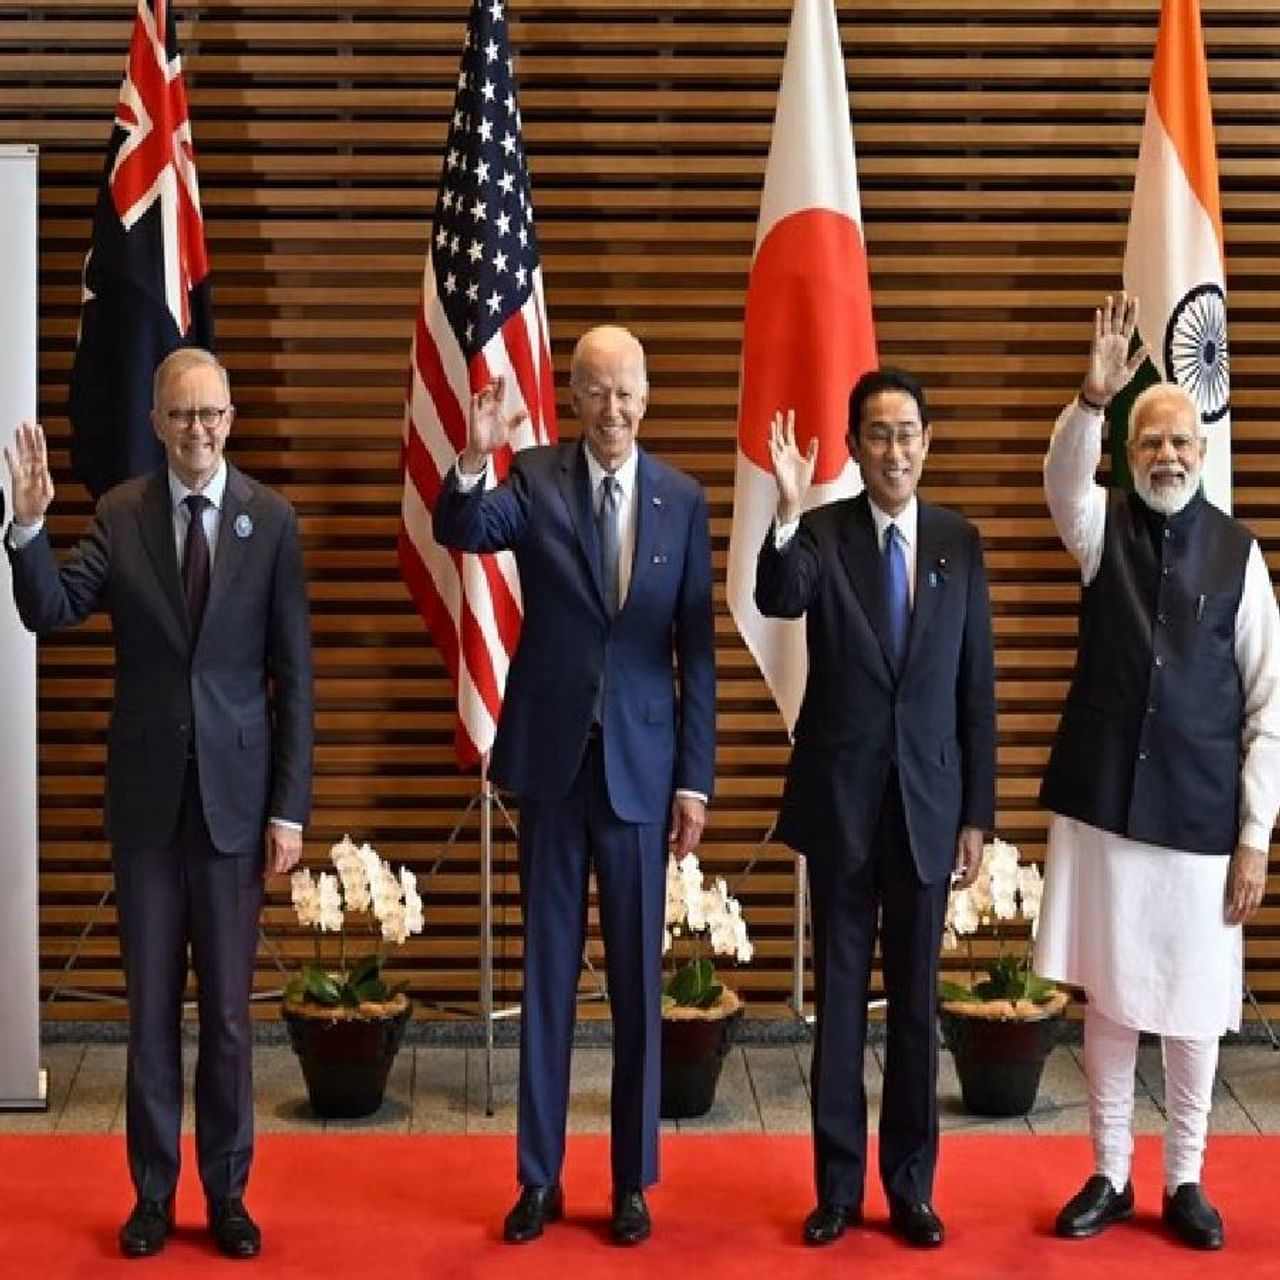 जपानचे पंतप्रधान फुमियो किशिदा यांच्या नेतृत्वाखाली टोकियो येथे क्वाड समिट- 2022 आयोजित करण्यात आली होती. या समिटमध्ये भारत, अमेरिका, जपान आणि ऑस्ट्रेलिया हे देश  सहभागी झाले होते. अमेरिकेचे अध्यक्ष जो बिडेन, भारताचे पंतप्रधान नरेंद्र मोदी, जपानचे पंतप्रधान फुमियो किशिदा आणि ऑस्ट्रेलियाचे पंतप्रधान अँथनी अल्बानीज यांनीही क्वाड समिटमध्ये 'क्वाड फेलोशिप' कार्यक्रमाचा शुभारंभ केला आहे. 
